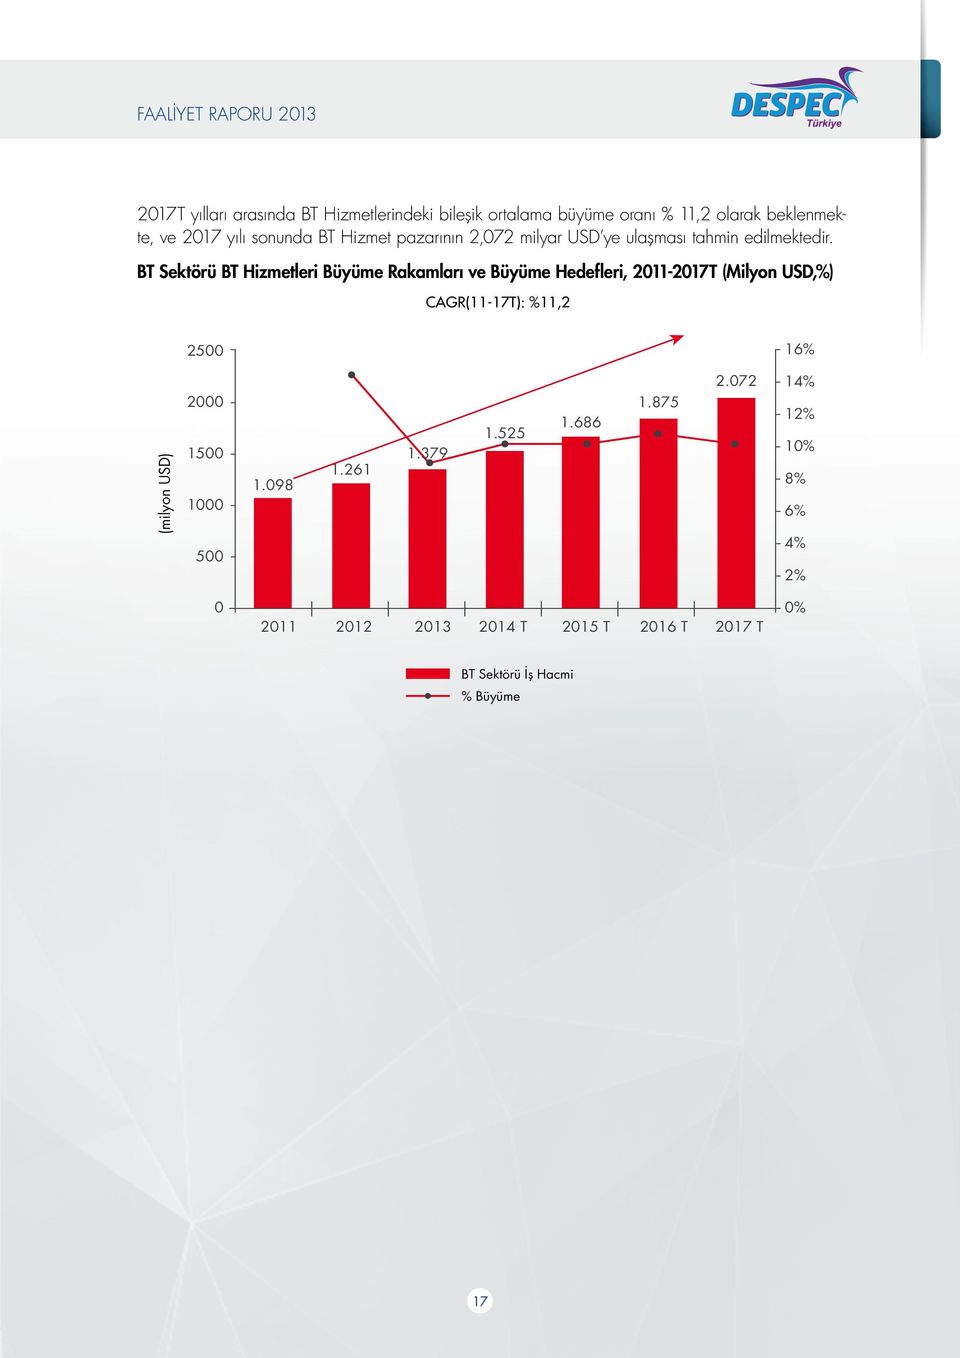 BT Sektörü BT Hizmetleri Büyüme Rakamları ve Büyüme Hedefleri, 2011-2017T (Milyon USD,%) CAGR(11-17T): %11,2 2500 16%